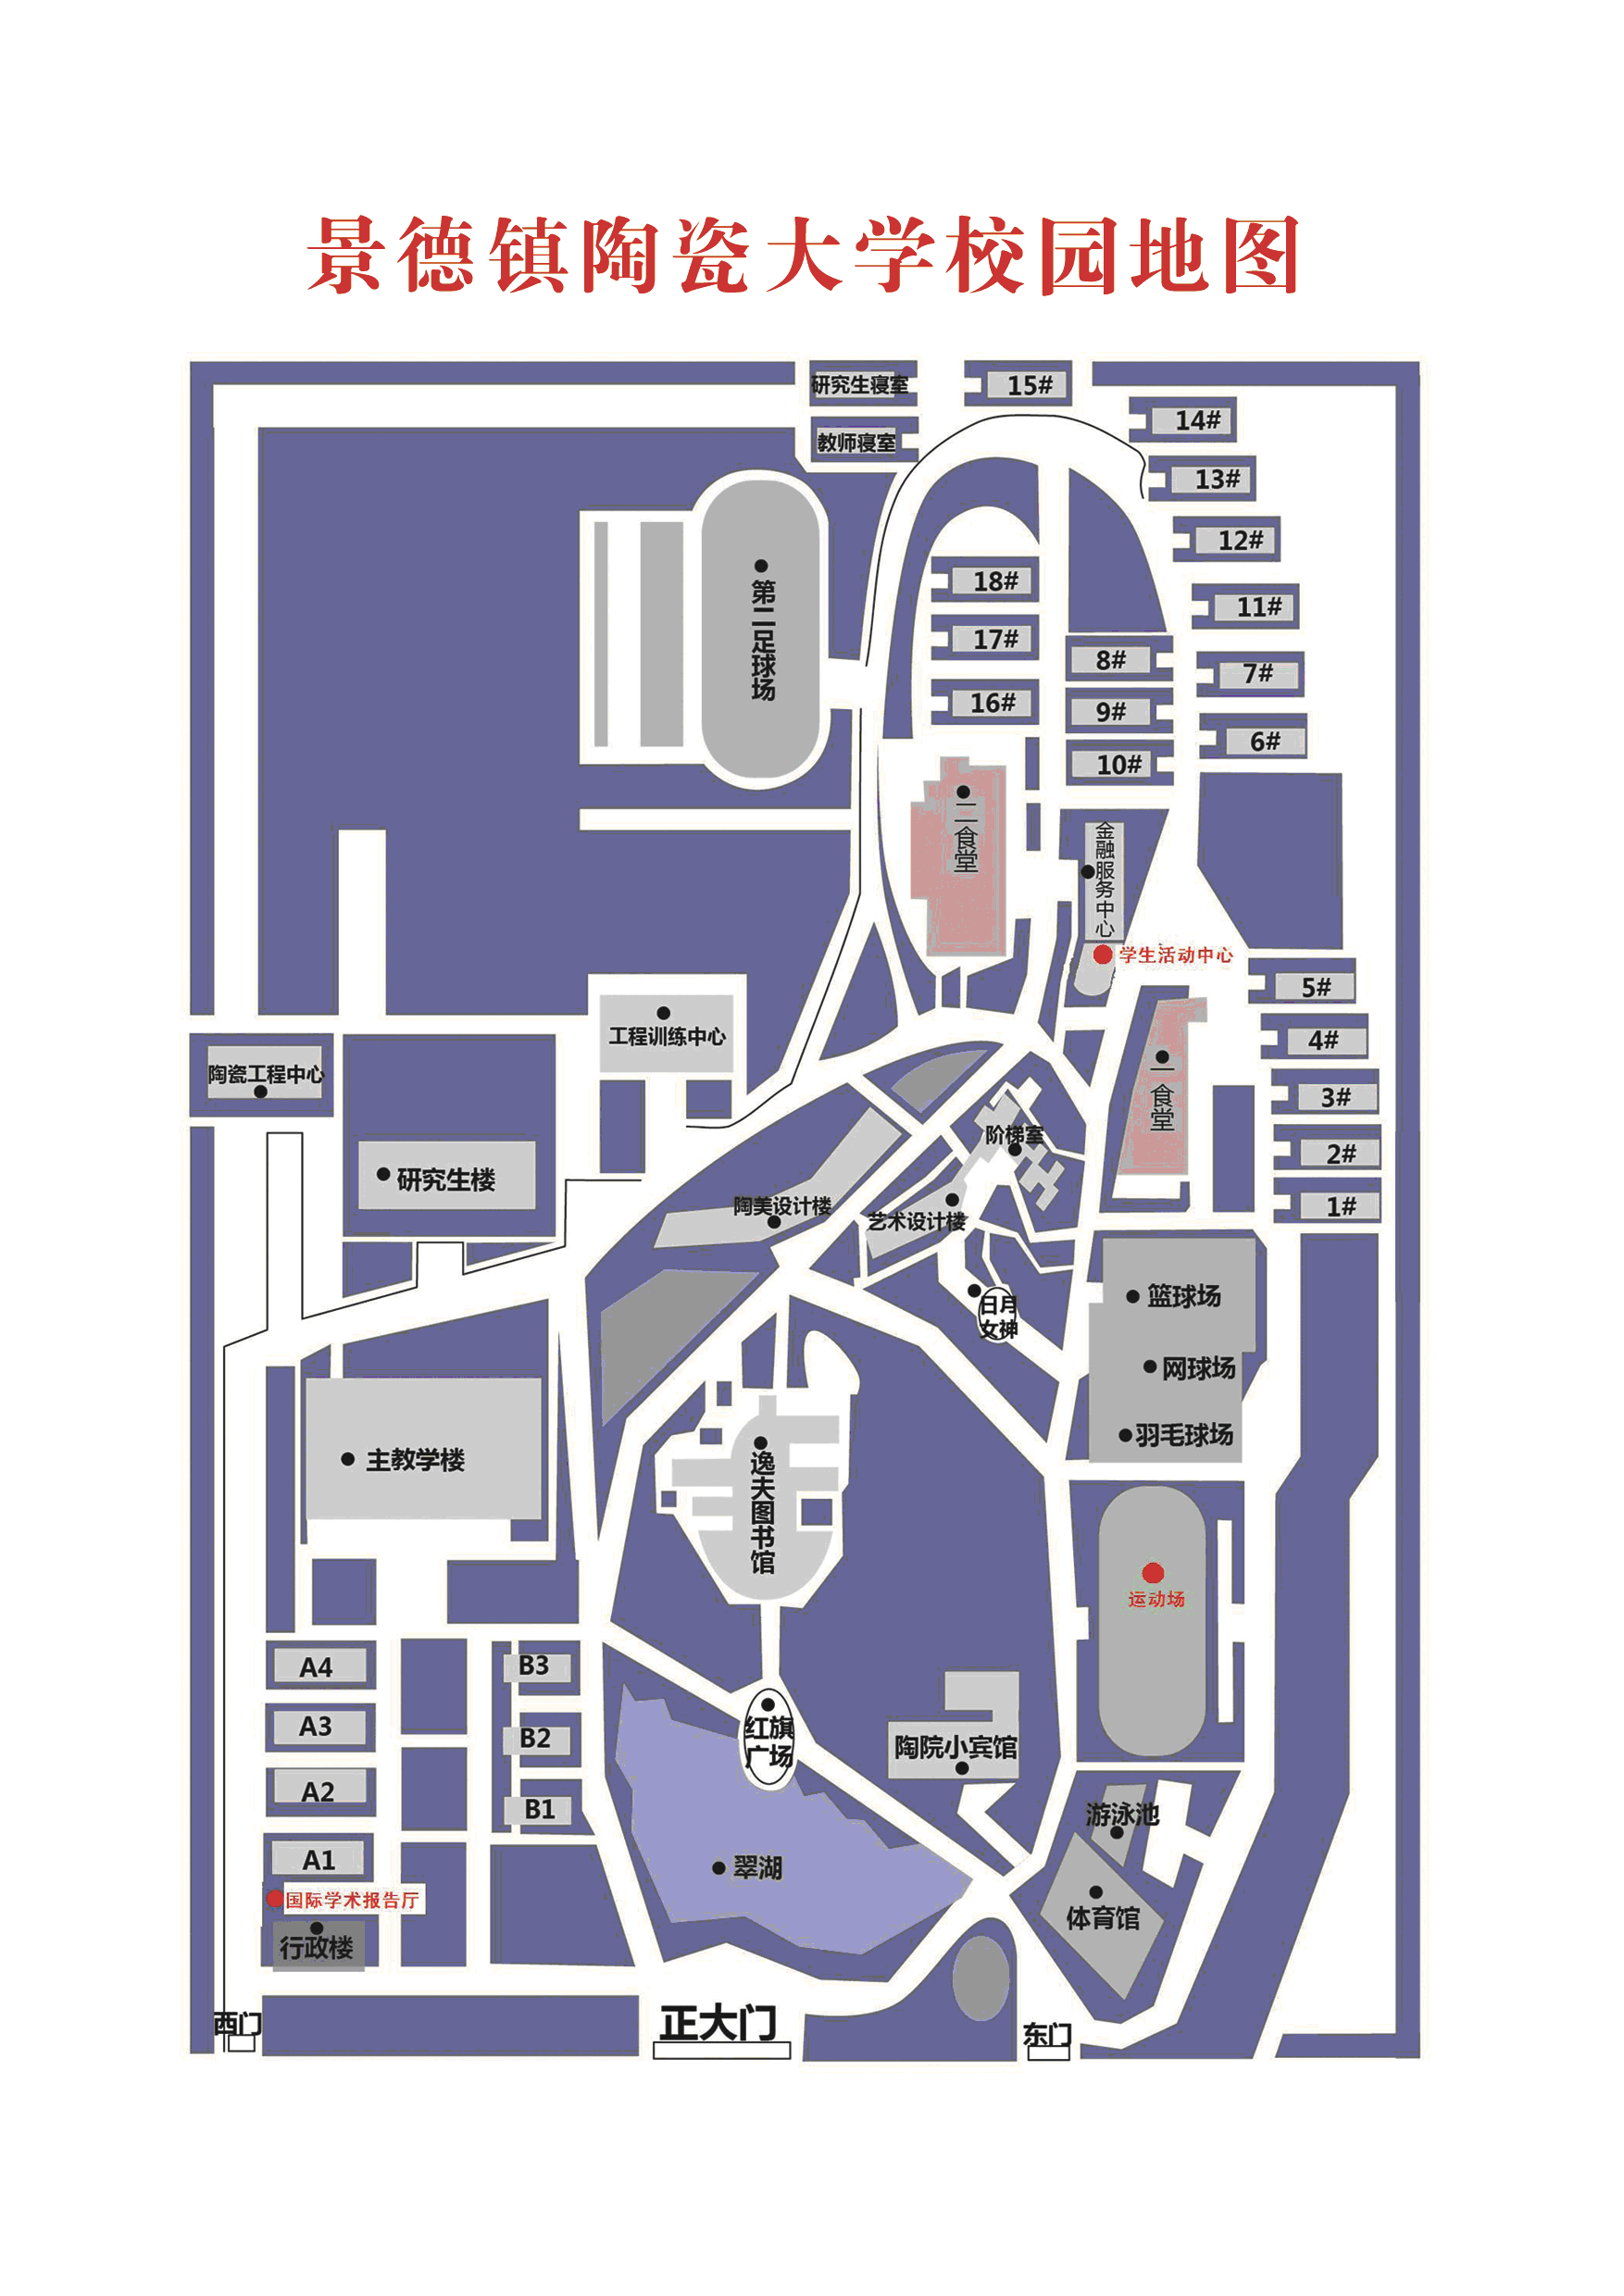 景德镇陶瓷大学校园地图